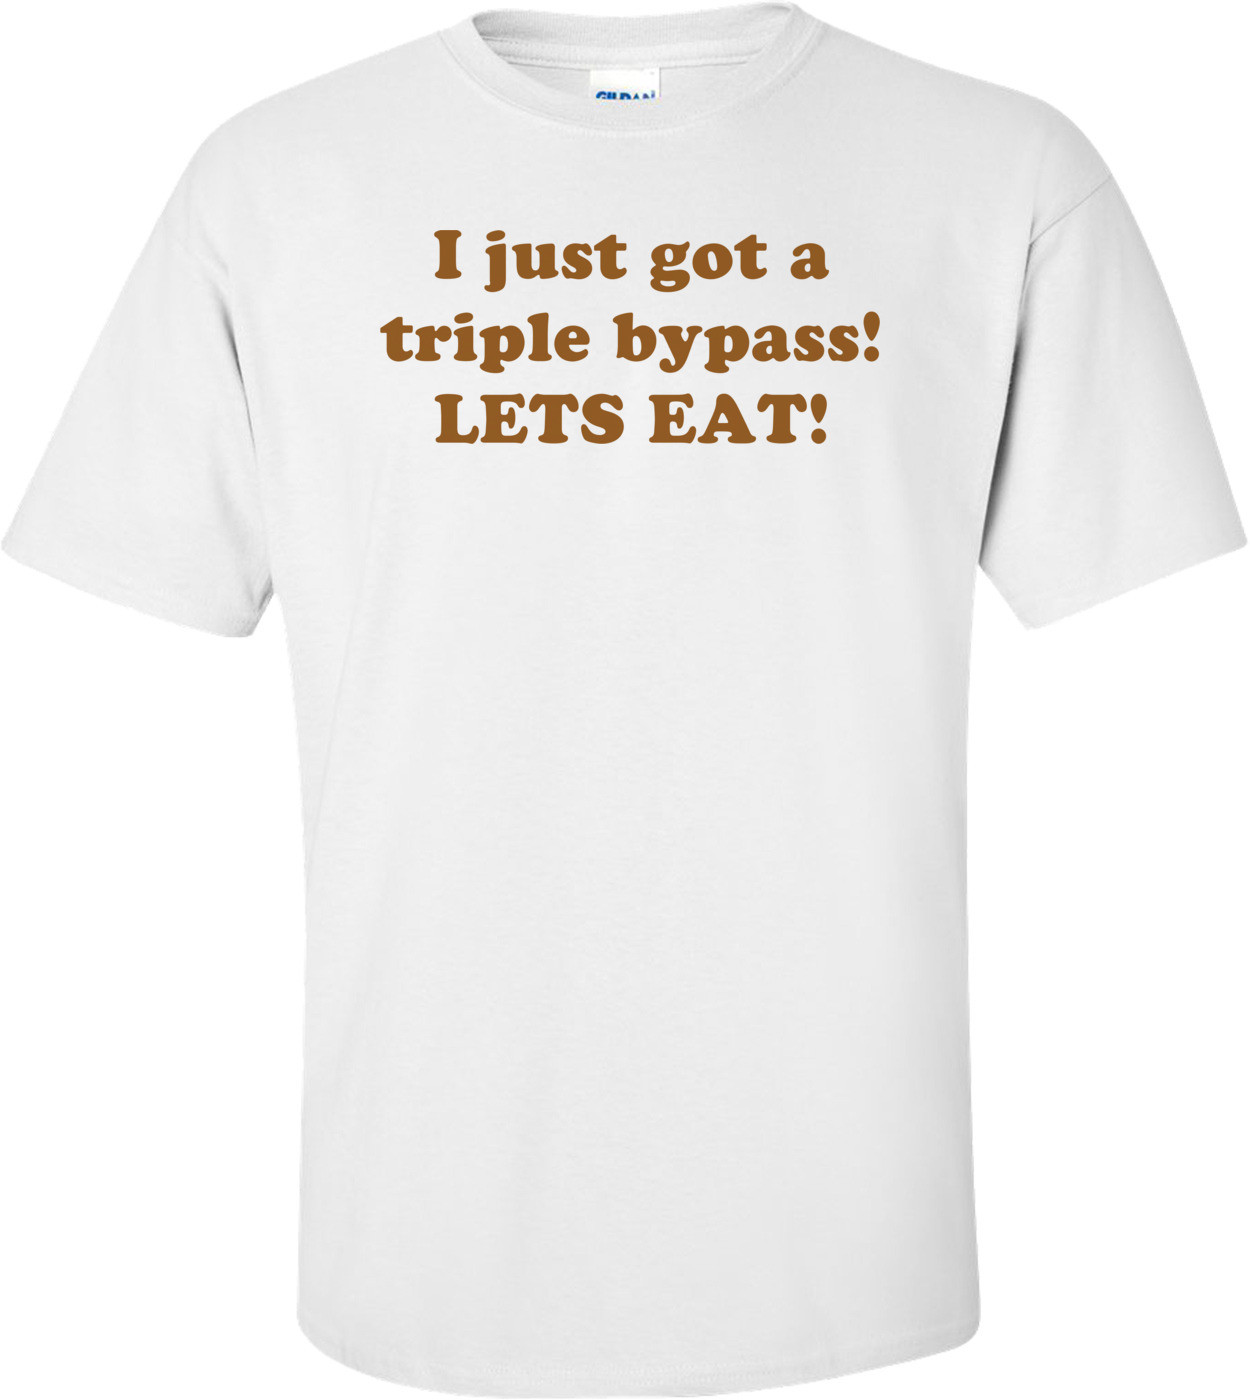 I just got a triple bypass! LETS EAT! Shirt